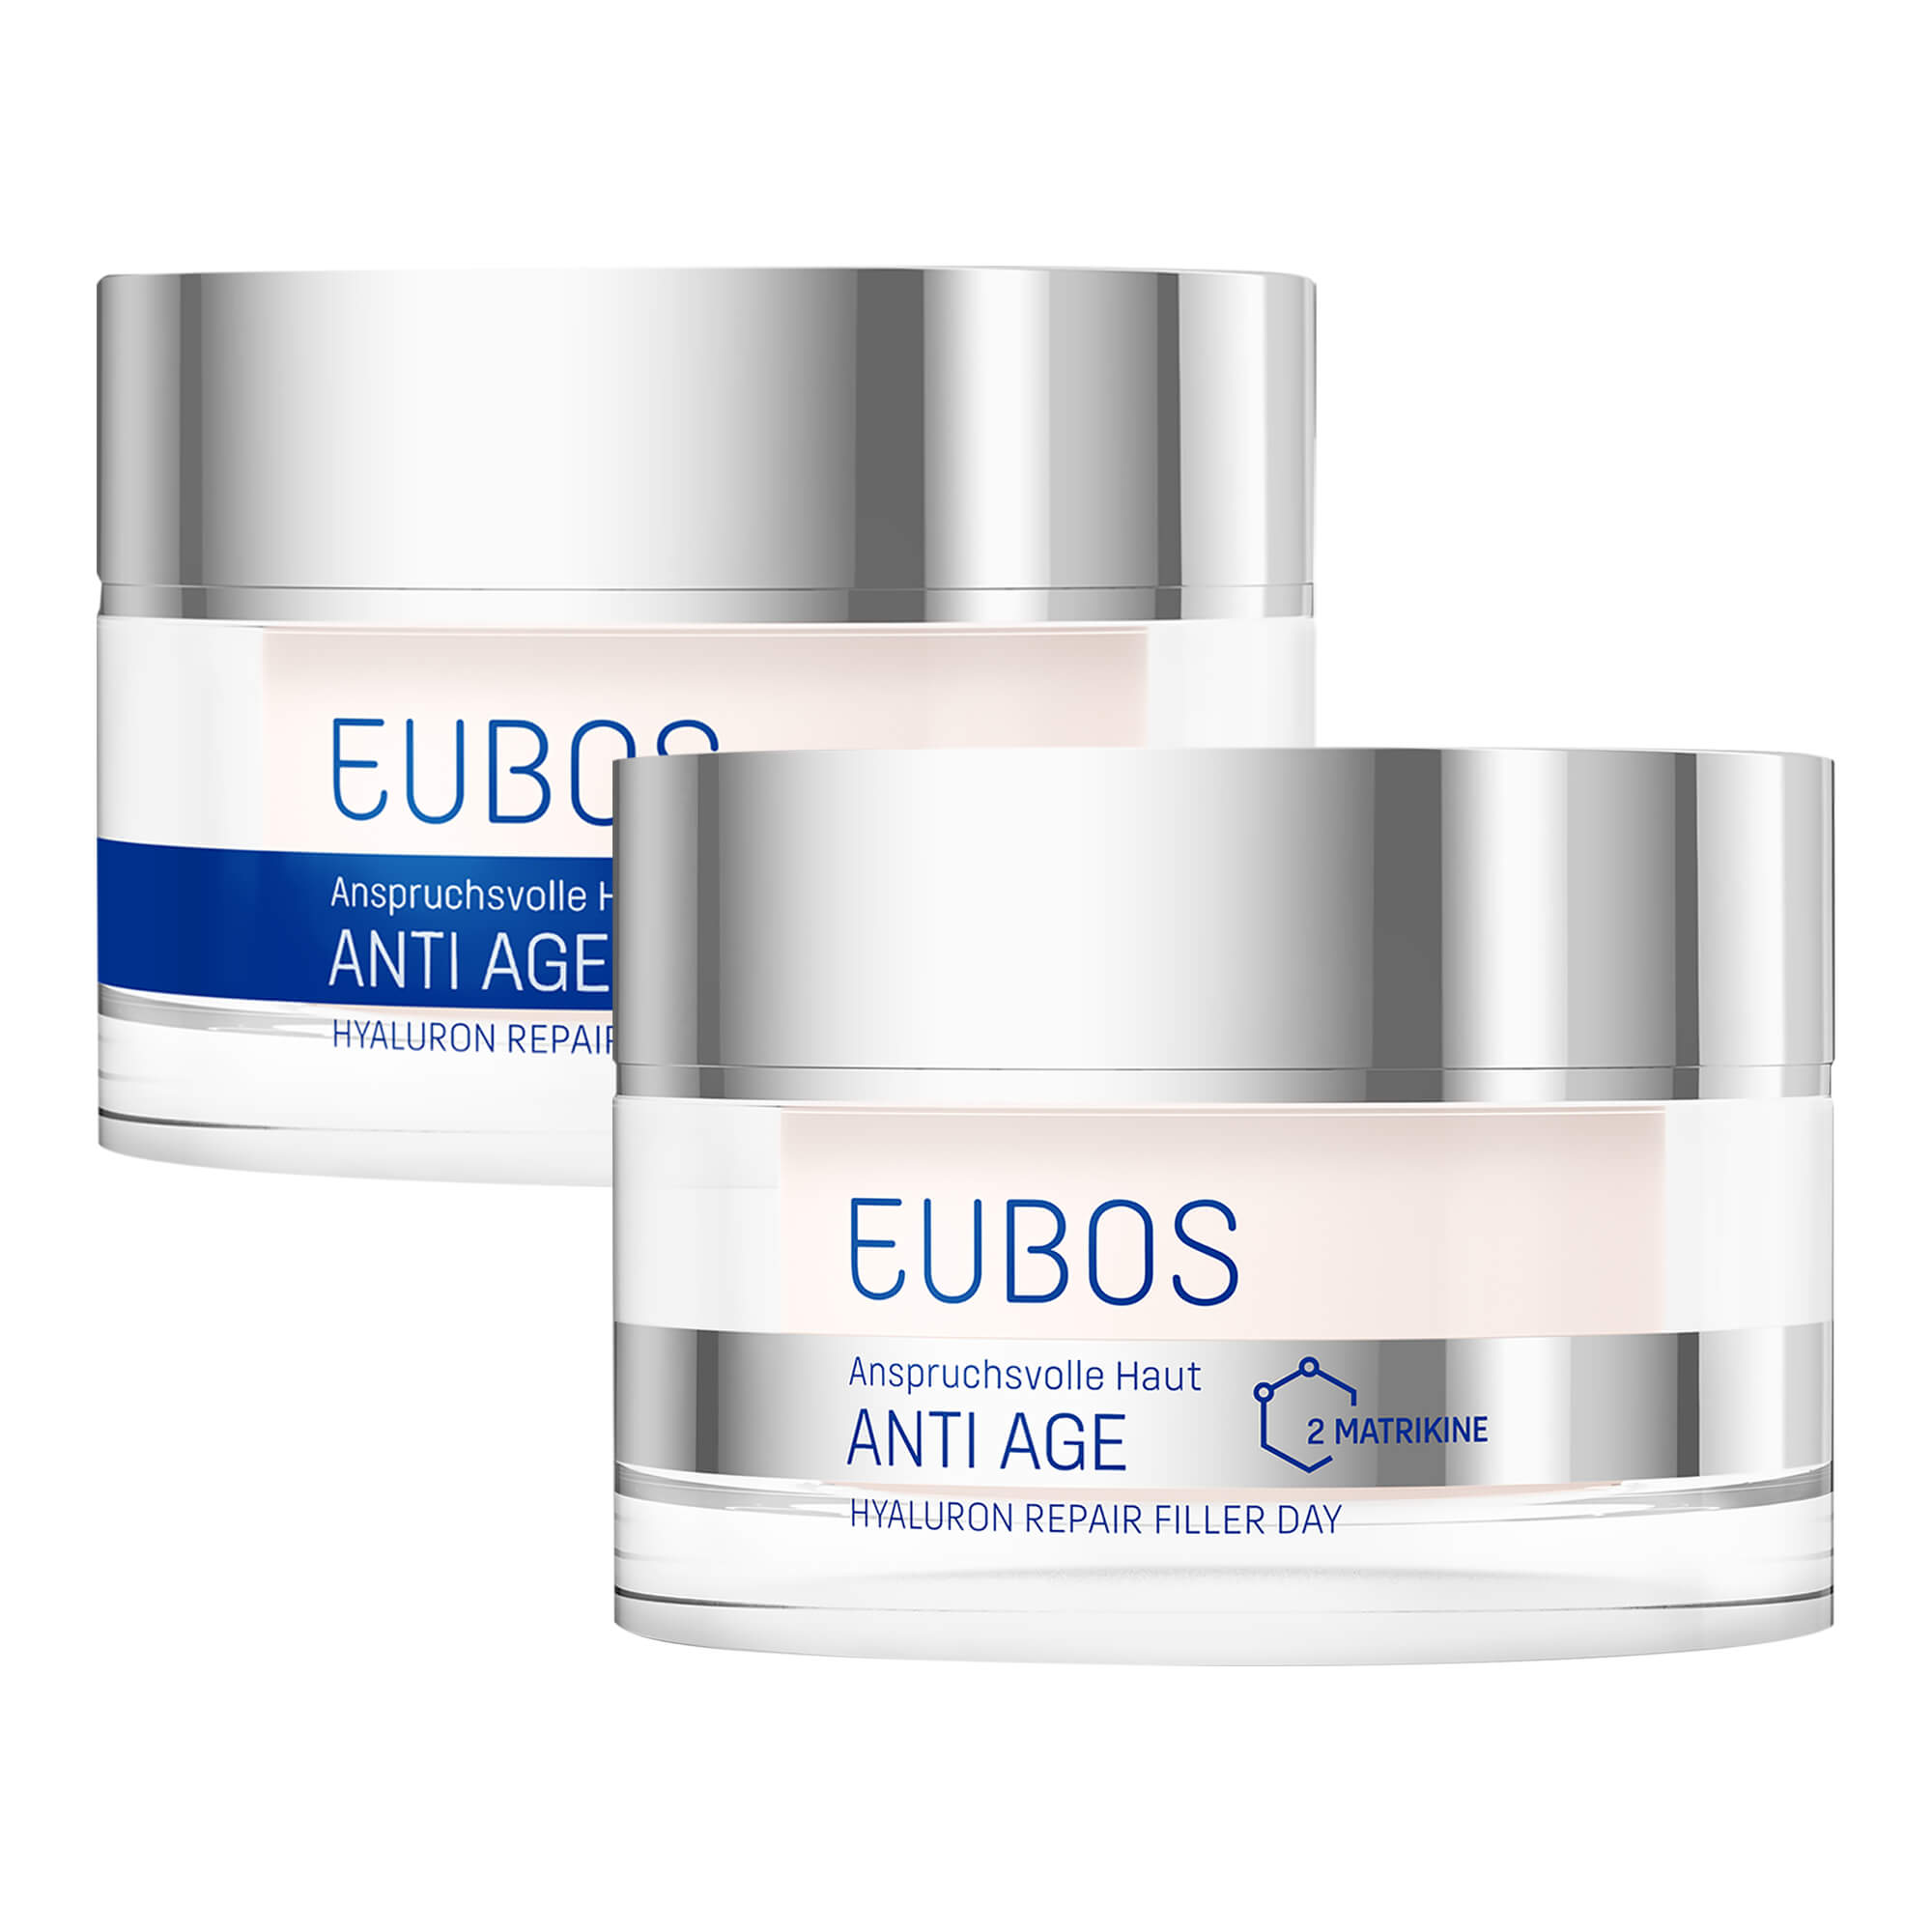 Mit je 50 ml Eubos ANTI AGE Hyaluron Repair Filler für das Gesicht. Als Tages- und Nachtcreme.